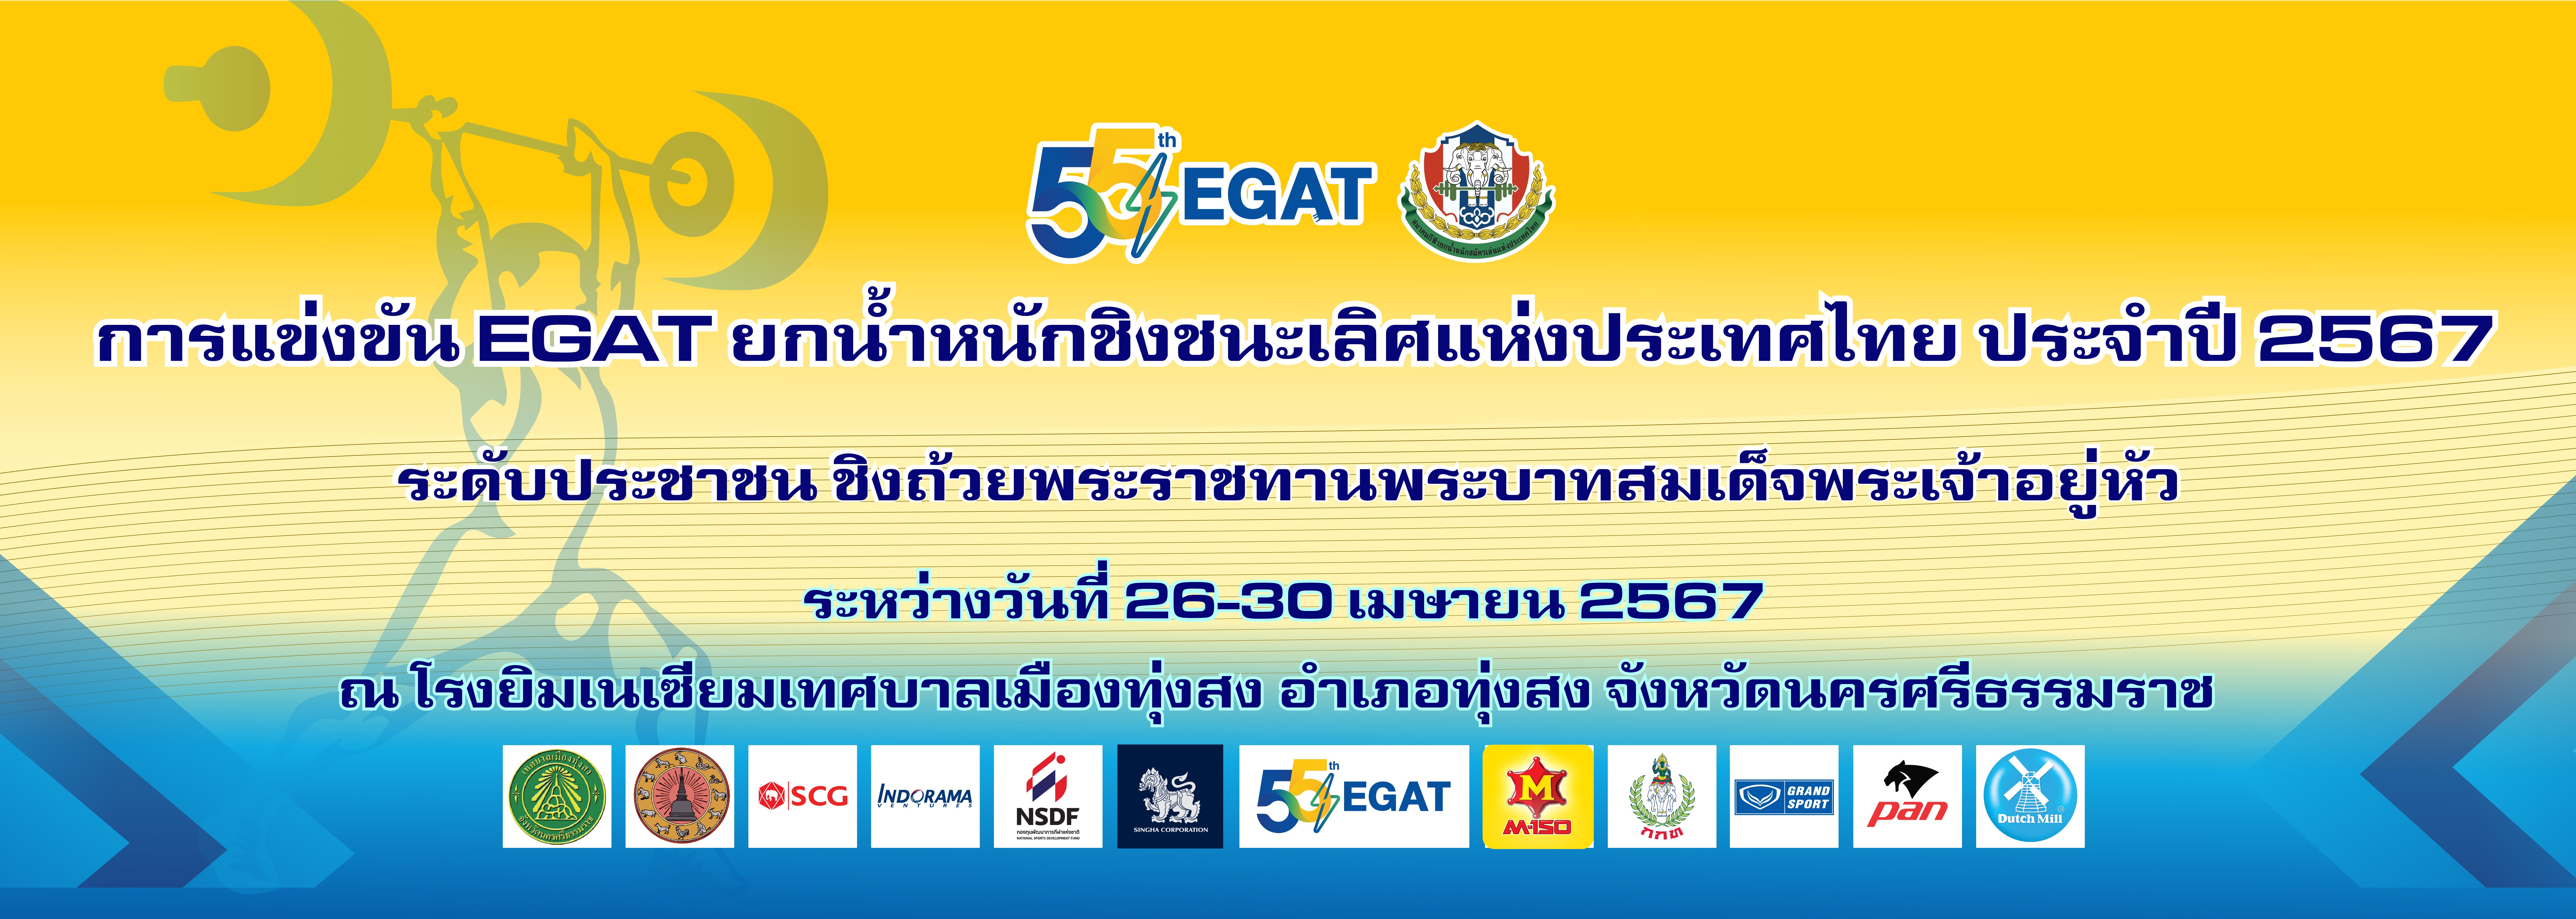 EGAT ยกน้ำหนักชิงชนะเลิศแห่งประเทศไทย ประจำปี 2567 ระดับประชาชน ชิงถ้วยพระราชทานพระบาทสมเด็จพระเจ้าอยู่หัว